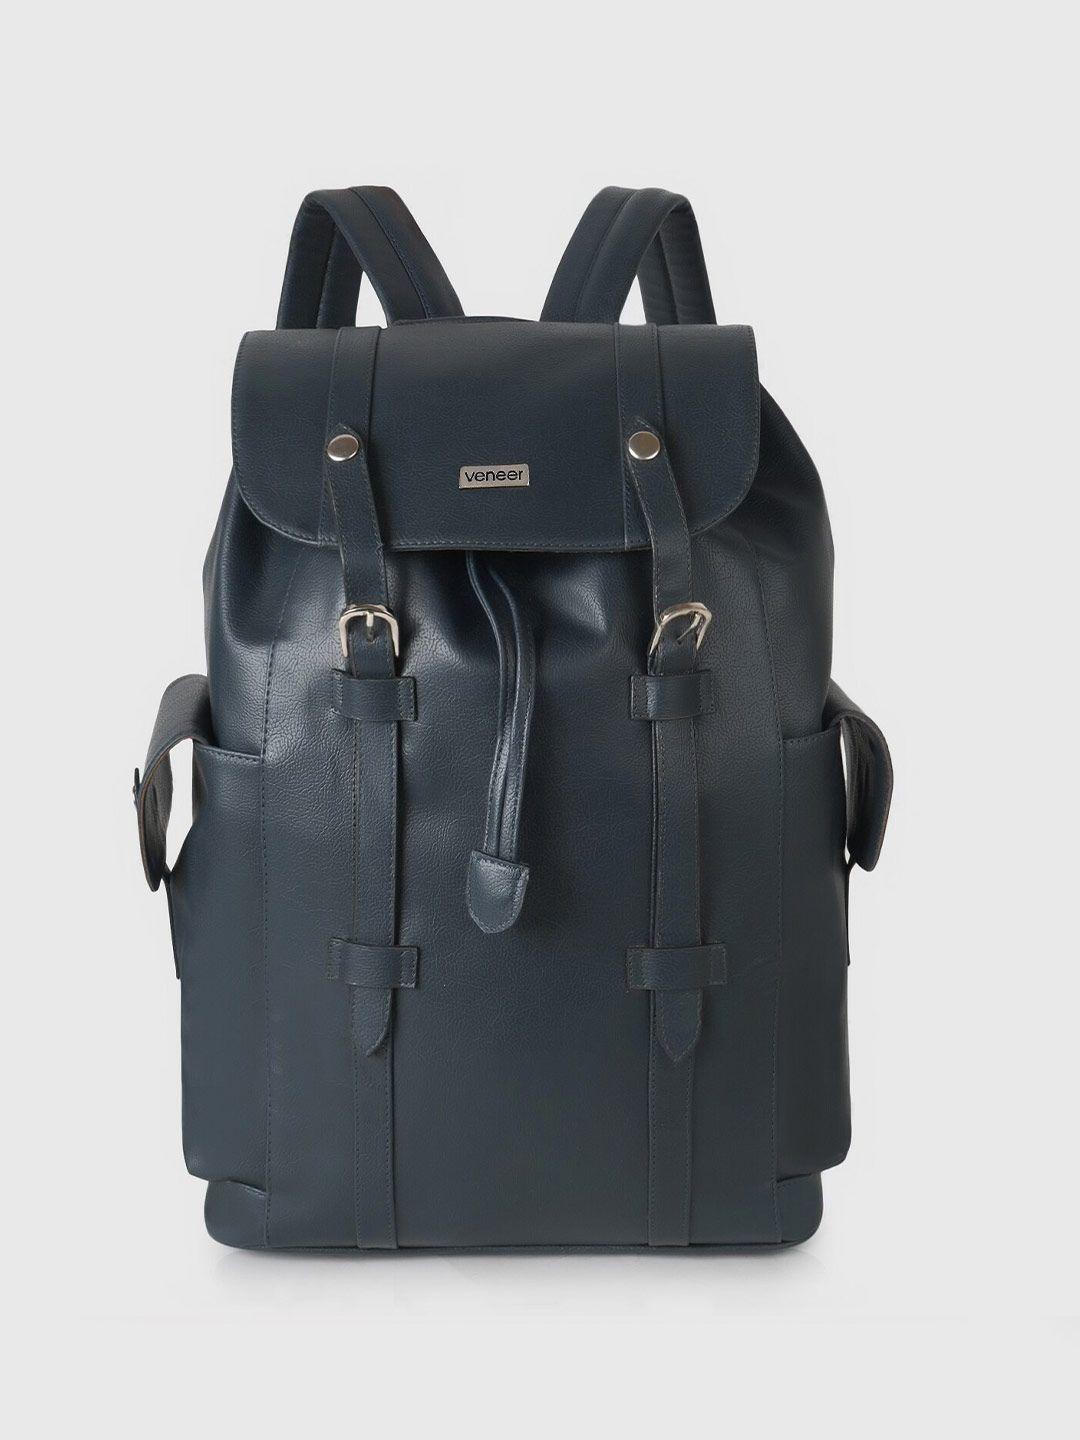 veneer unisex synthetic leather ergonomic backpack